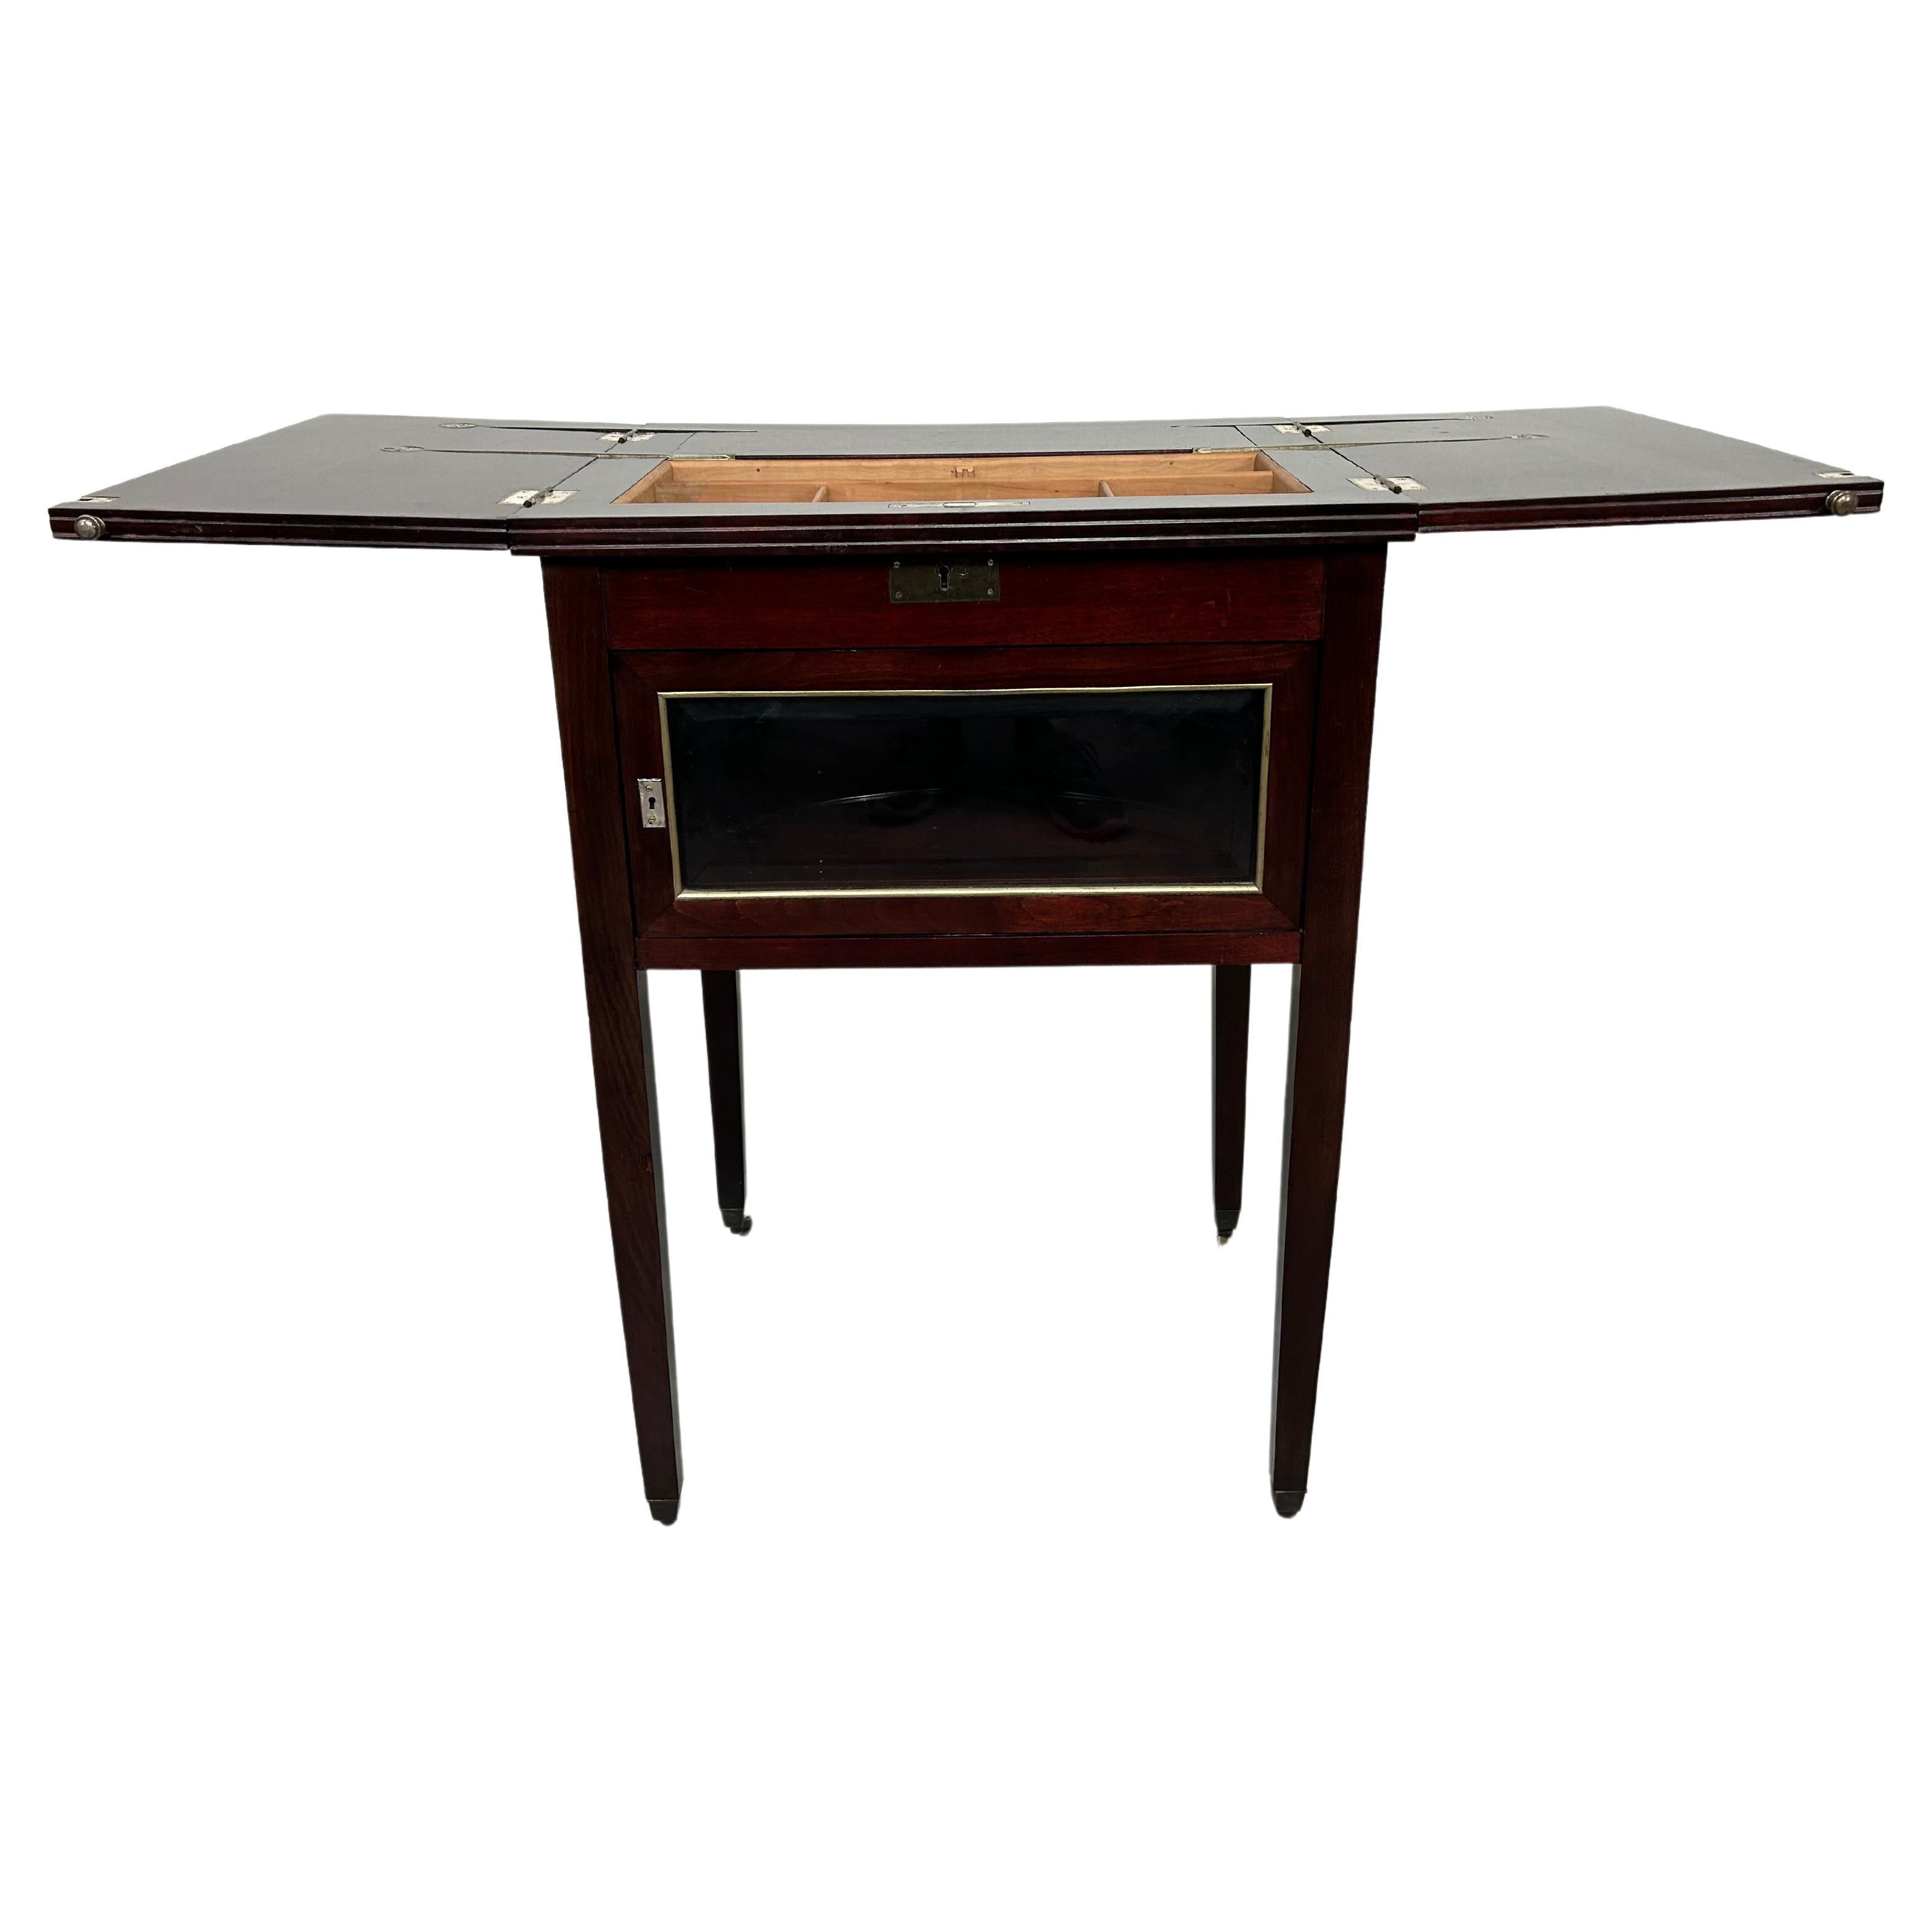 Jugendstil mahogany bar cabinet by Portois & Fix For Sale